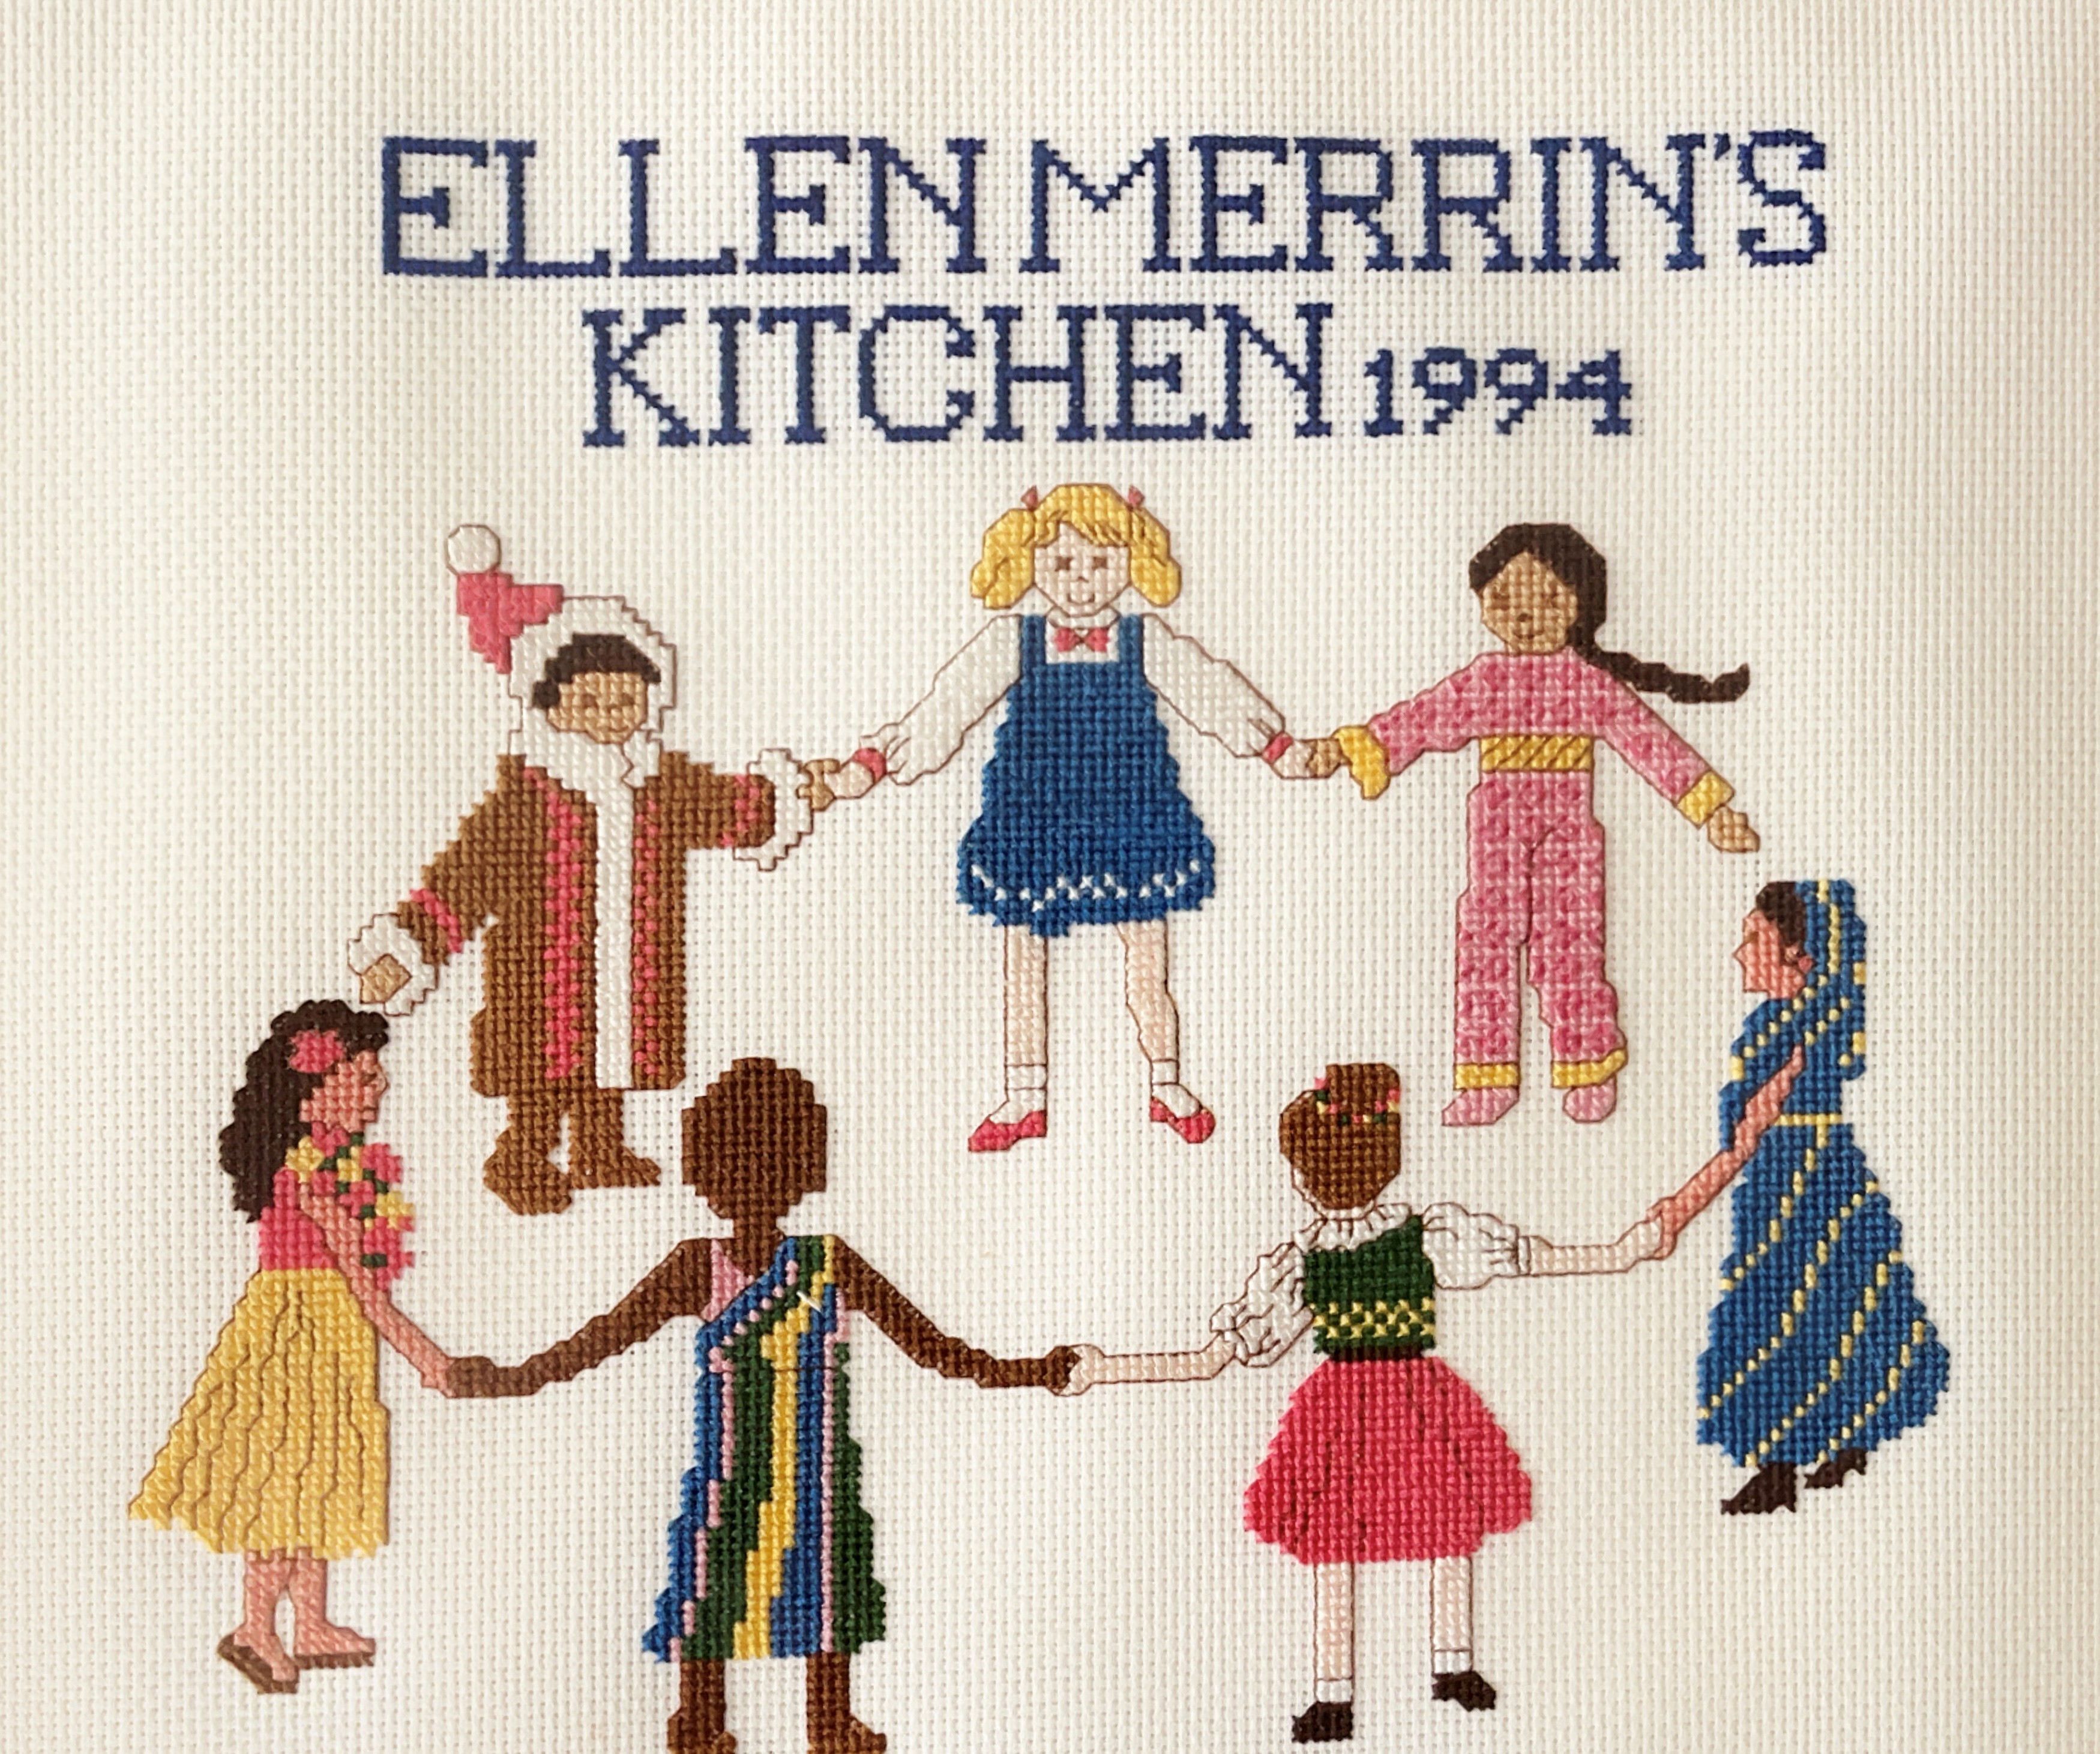 Donate to Ellen Merrin Kitchen Fund